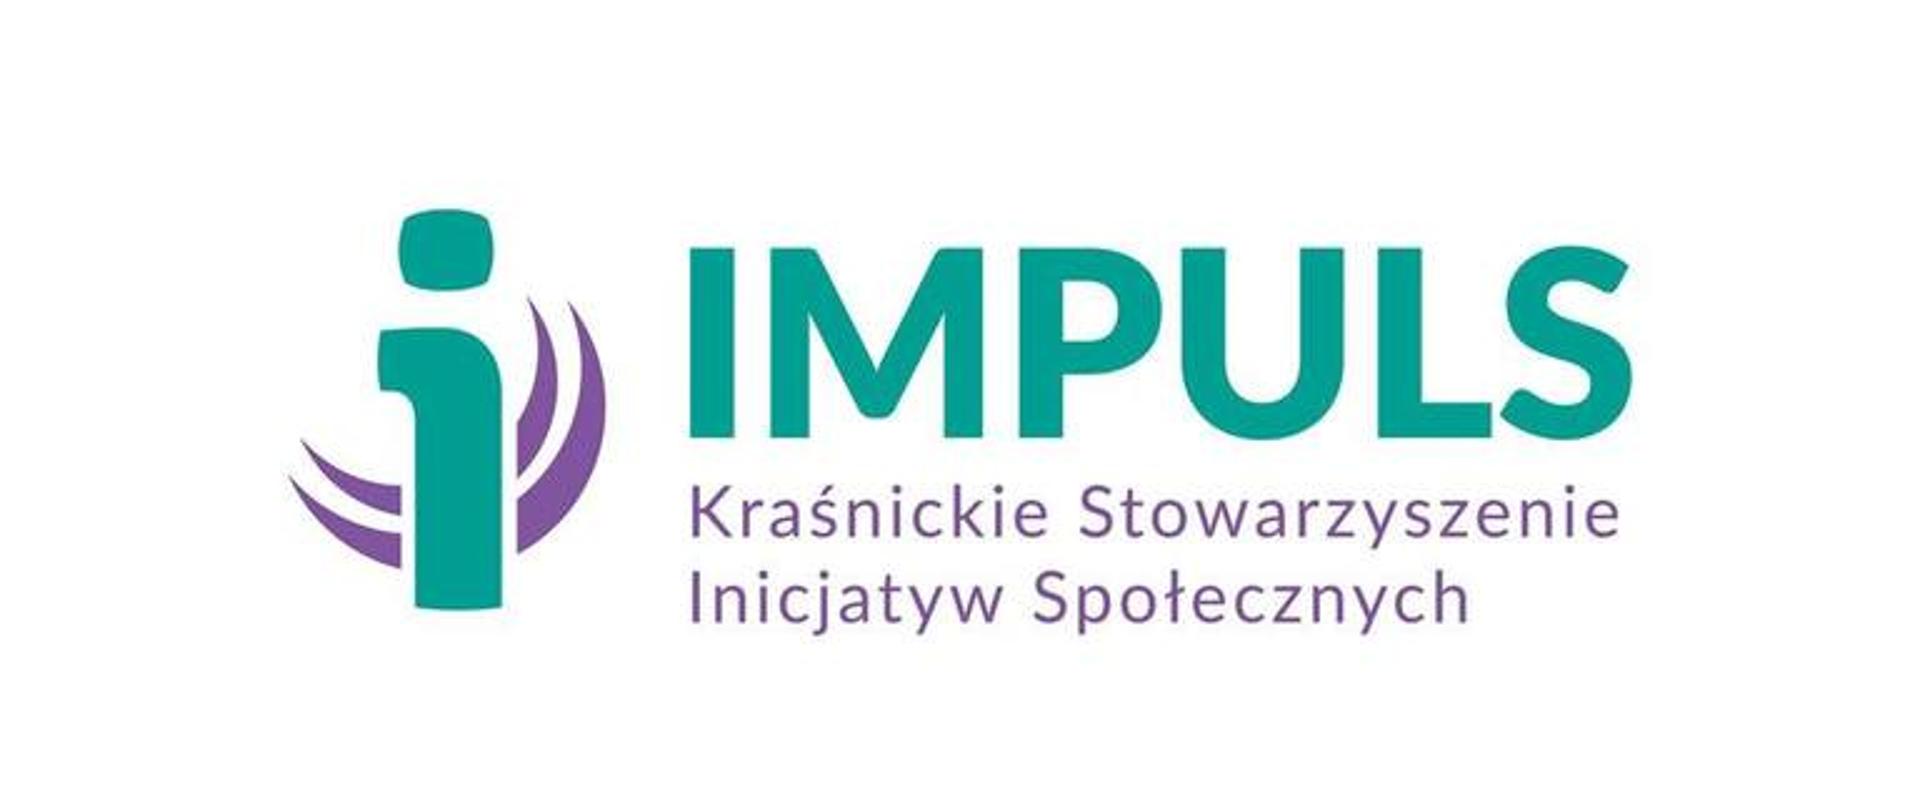 Grafika Impuls Kraśnickie Stowarzyszenie Inicjatyw Społecznych